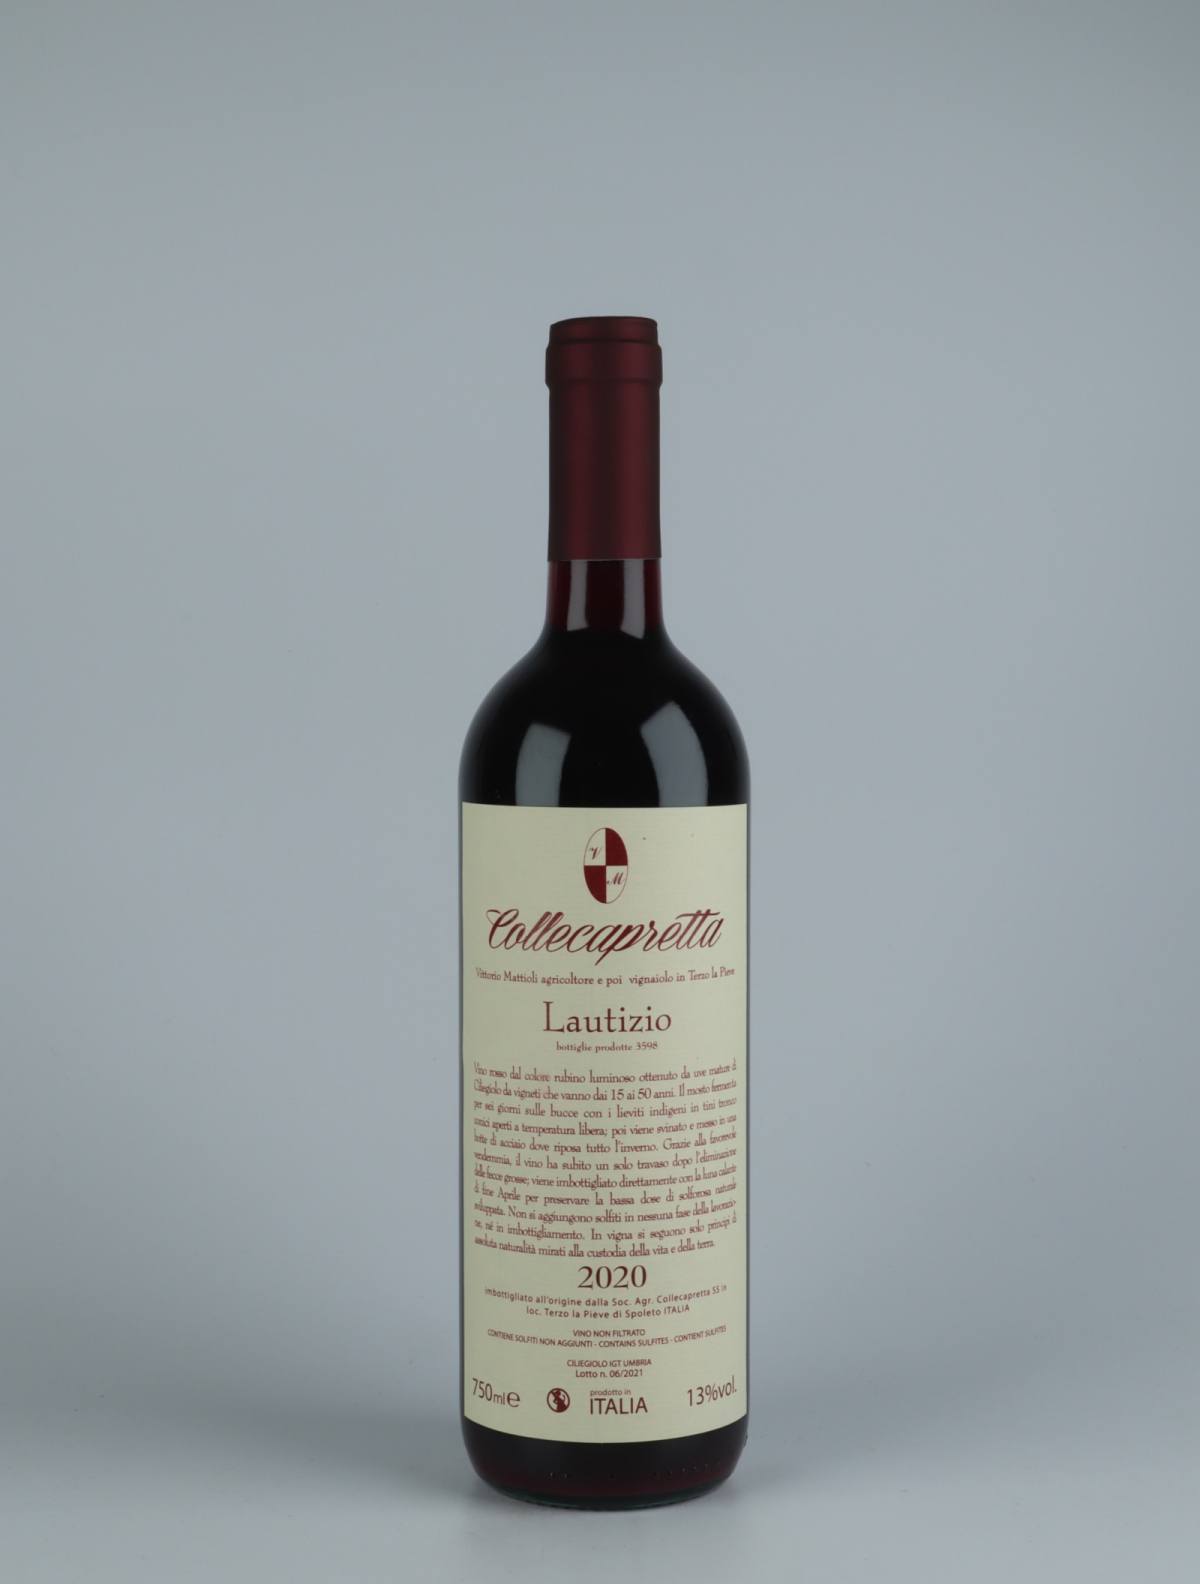 A bottle 2020 Lautizio Red wine from Collecapretta, Umbria in Italy